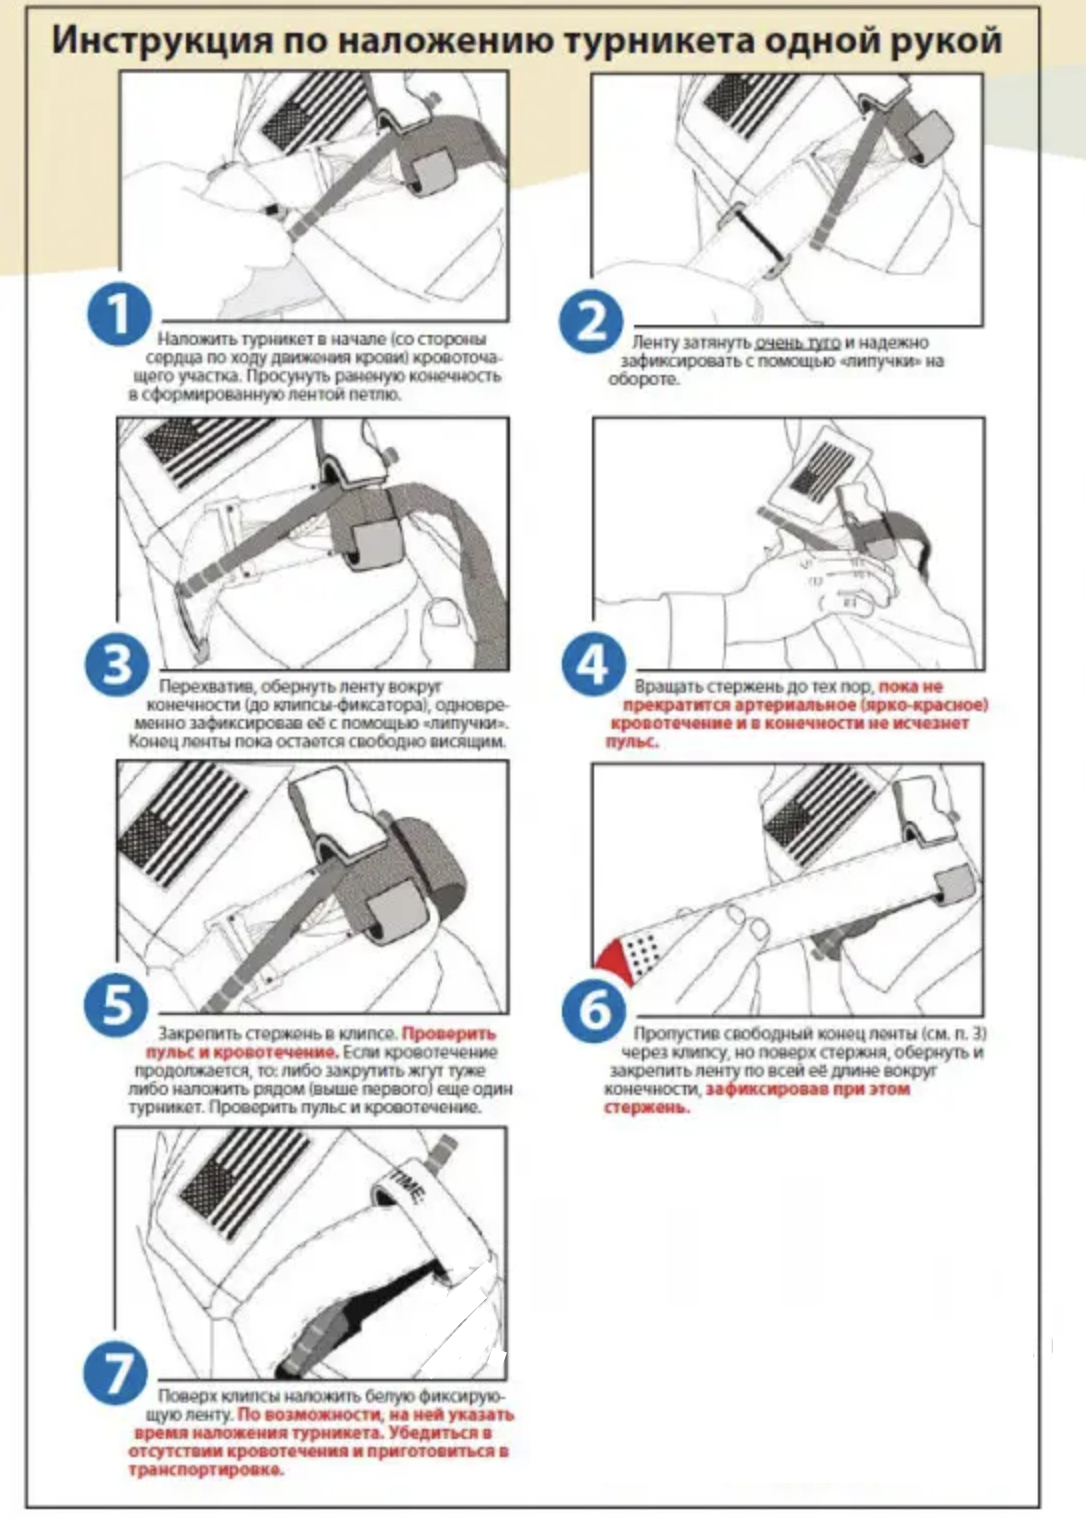 Инструкция по использованию жгута-турникета одной рукой